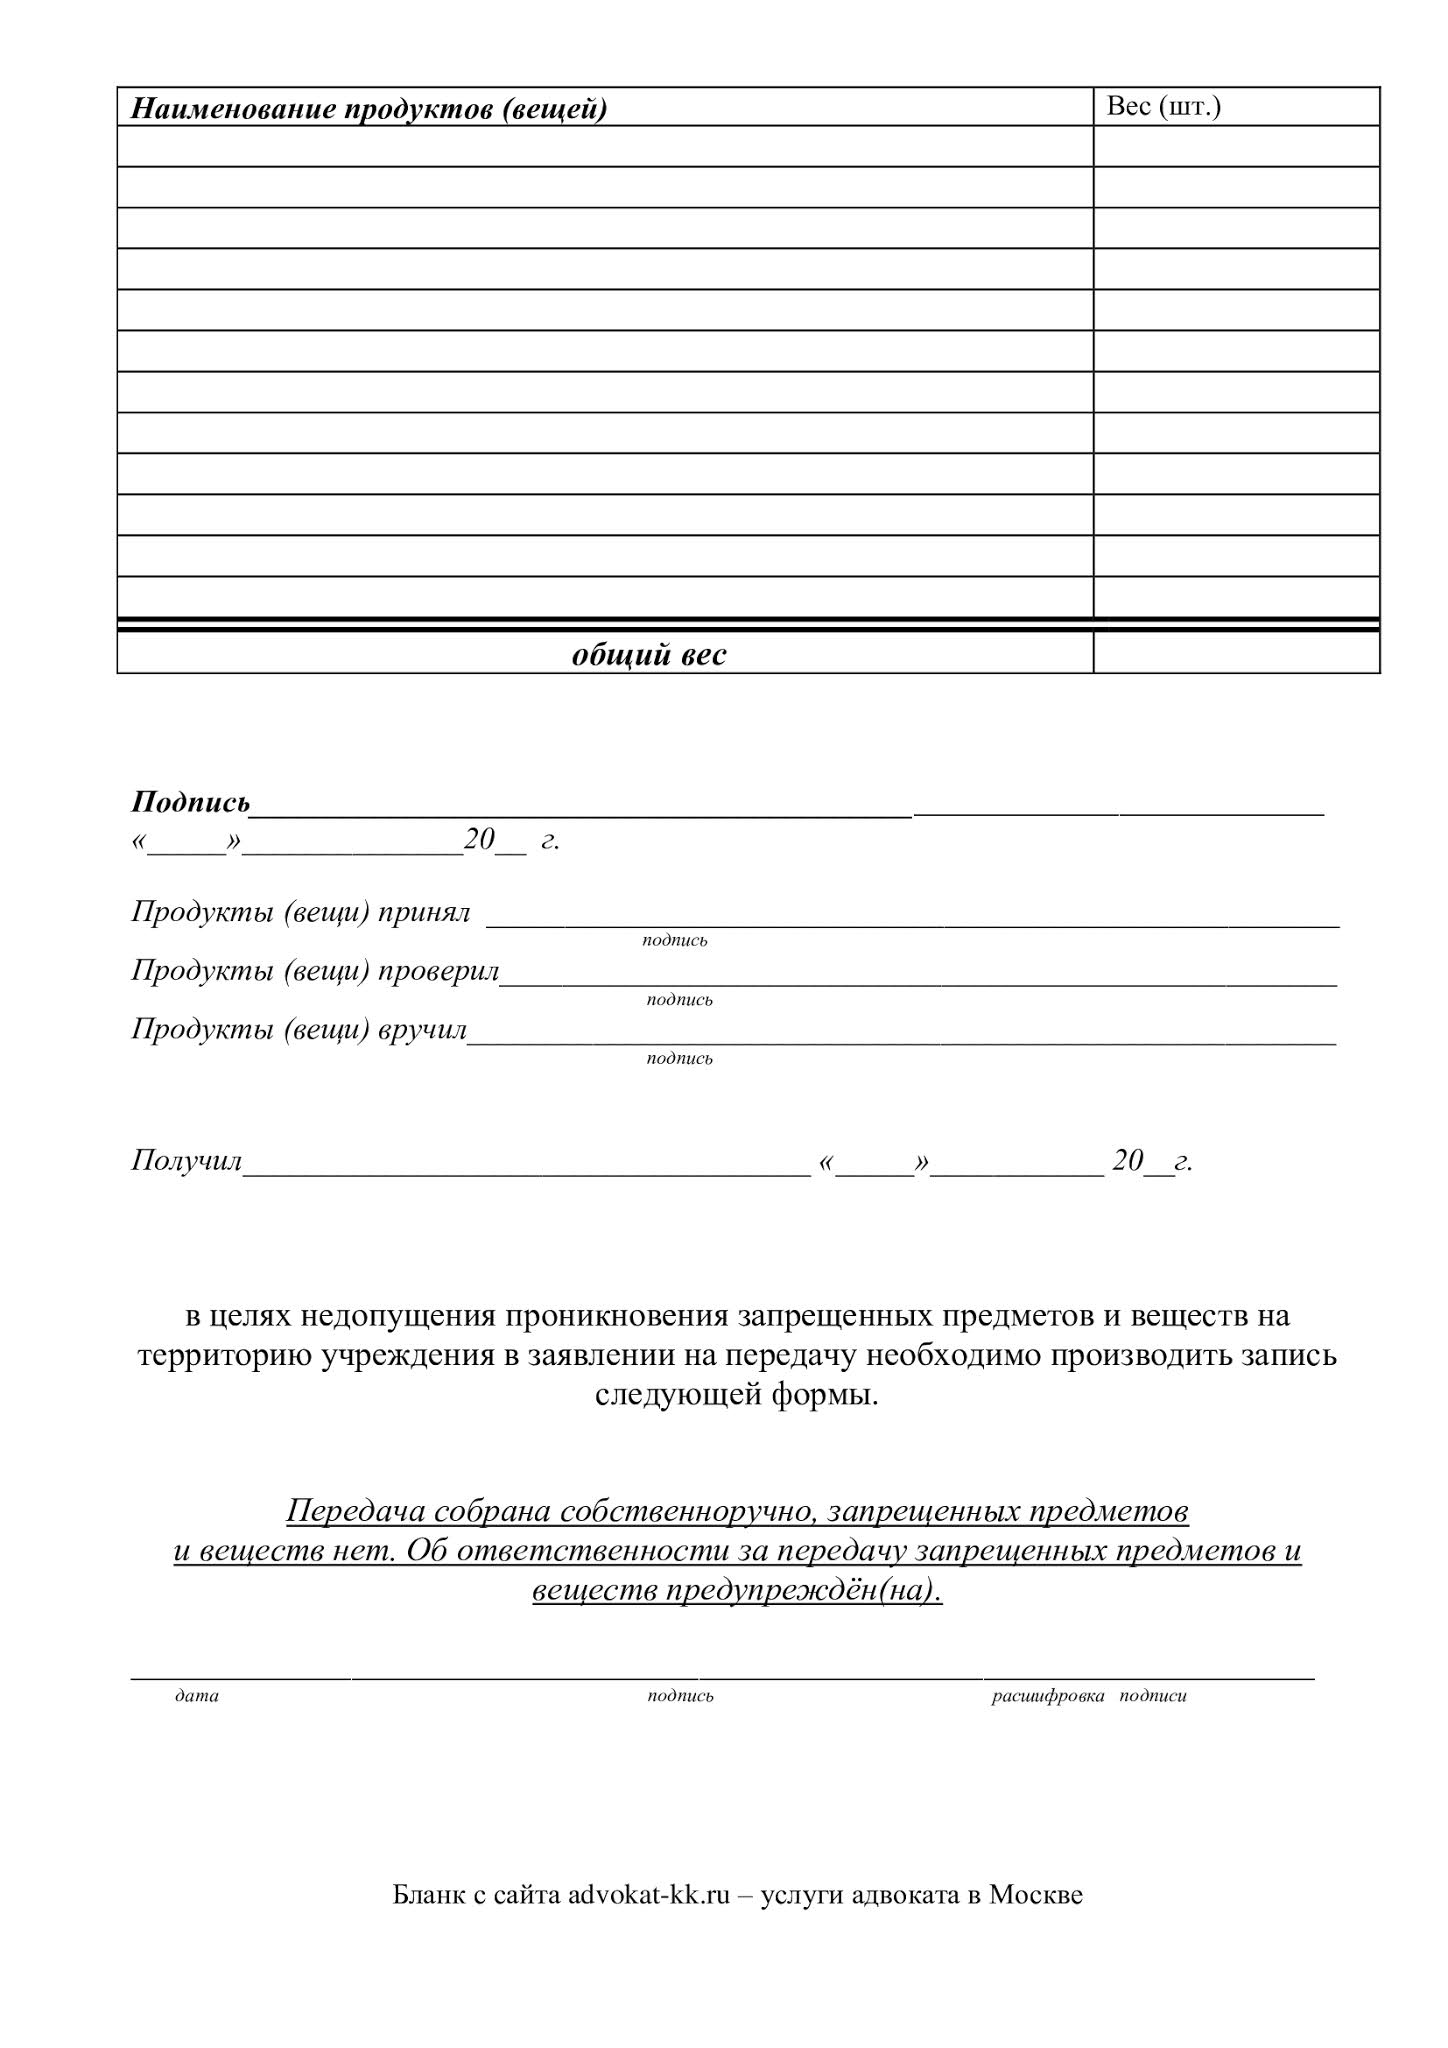 Бланк заявления на передачу продуктов и вещей в СИЗО Москвы (образец) 2